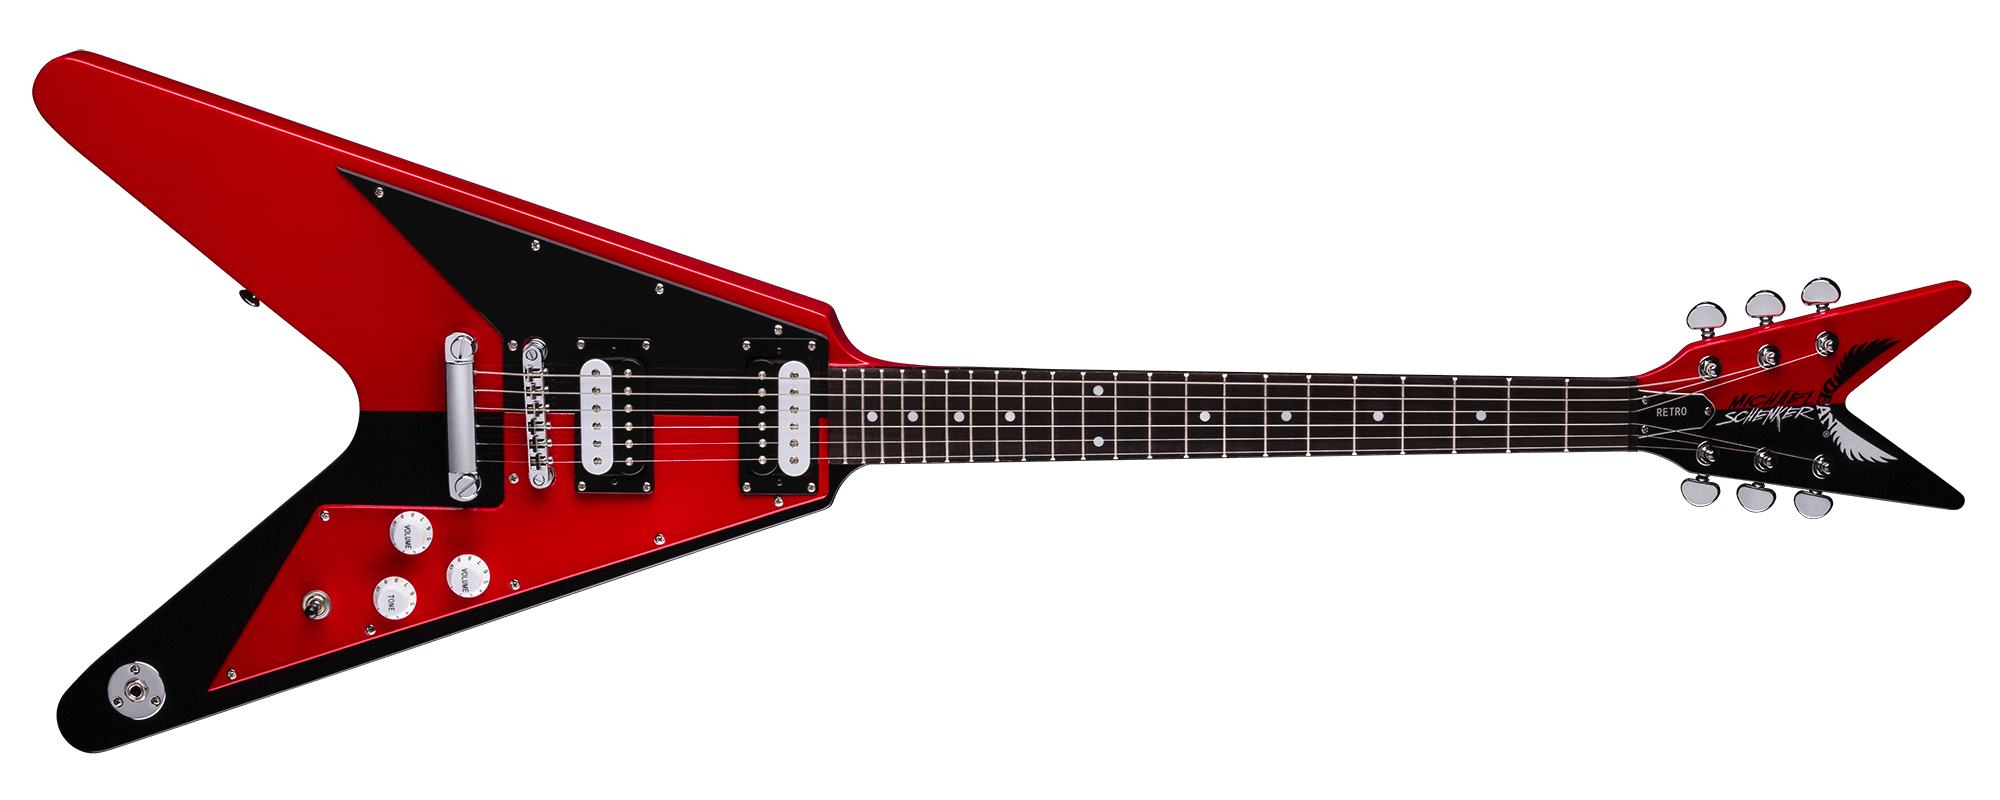 Красная электрическая гитара PNG картина